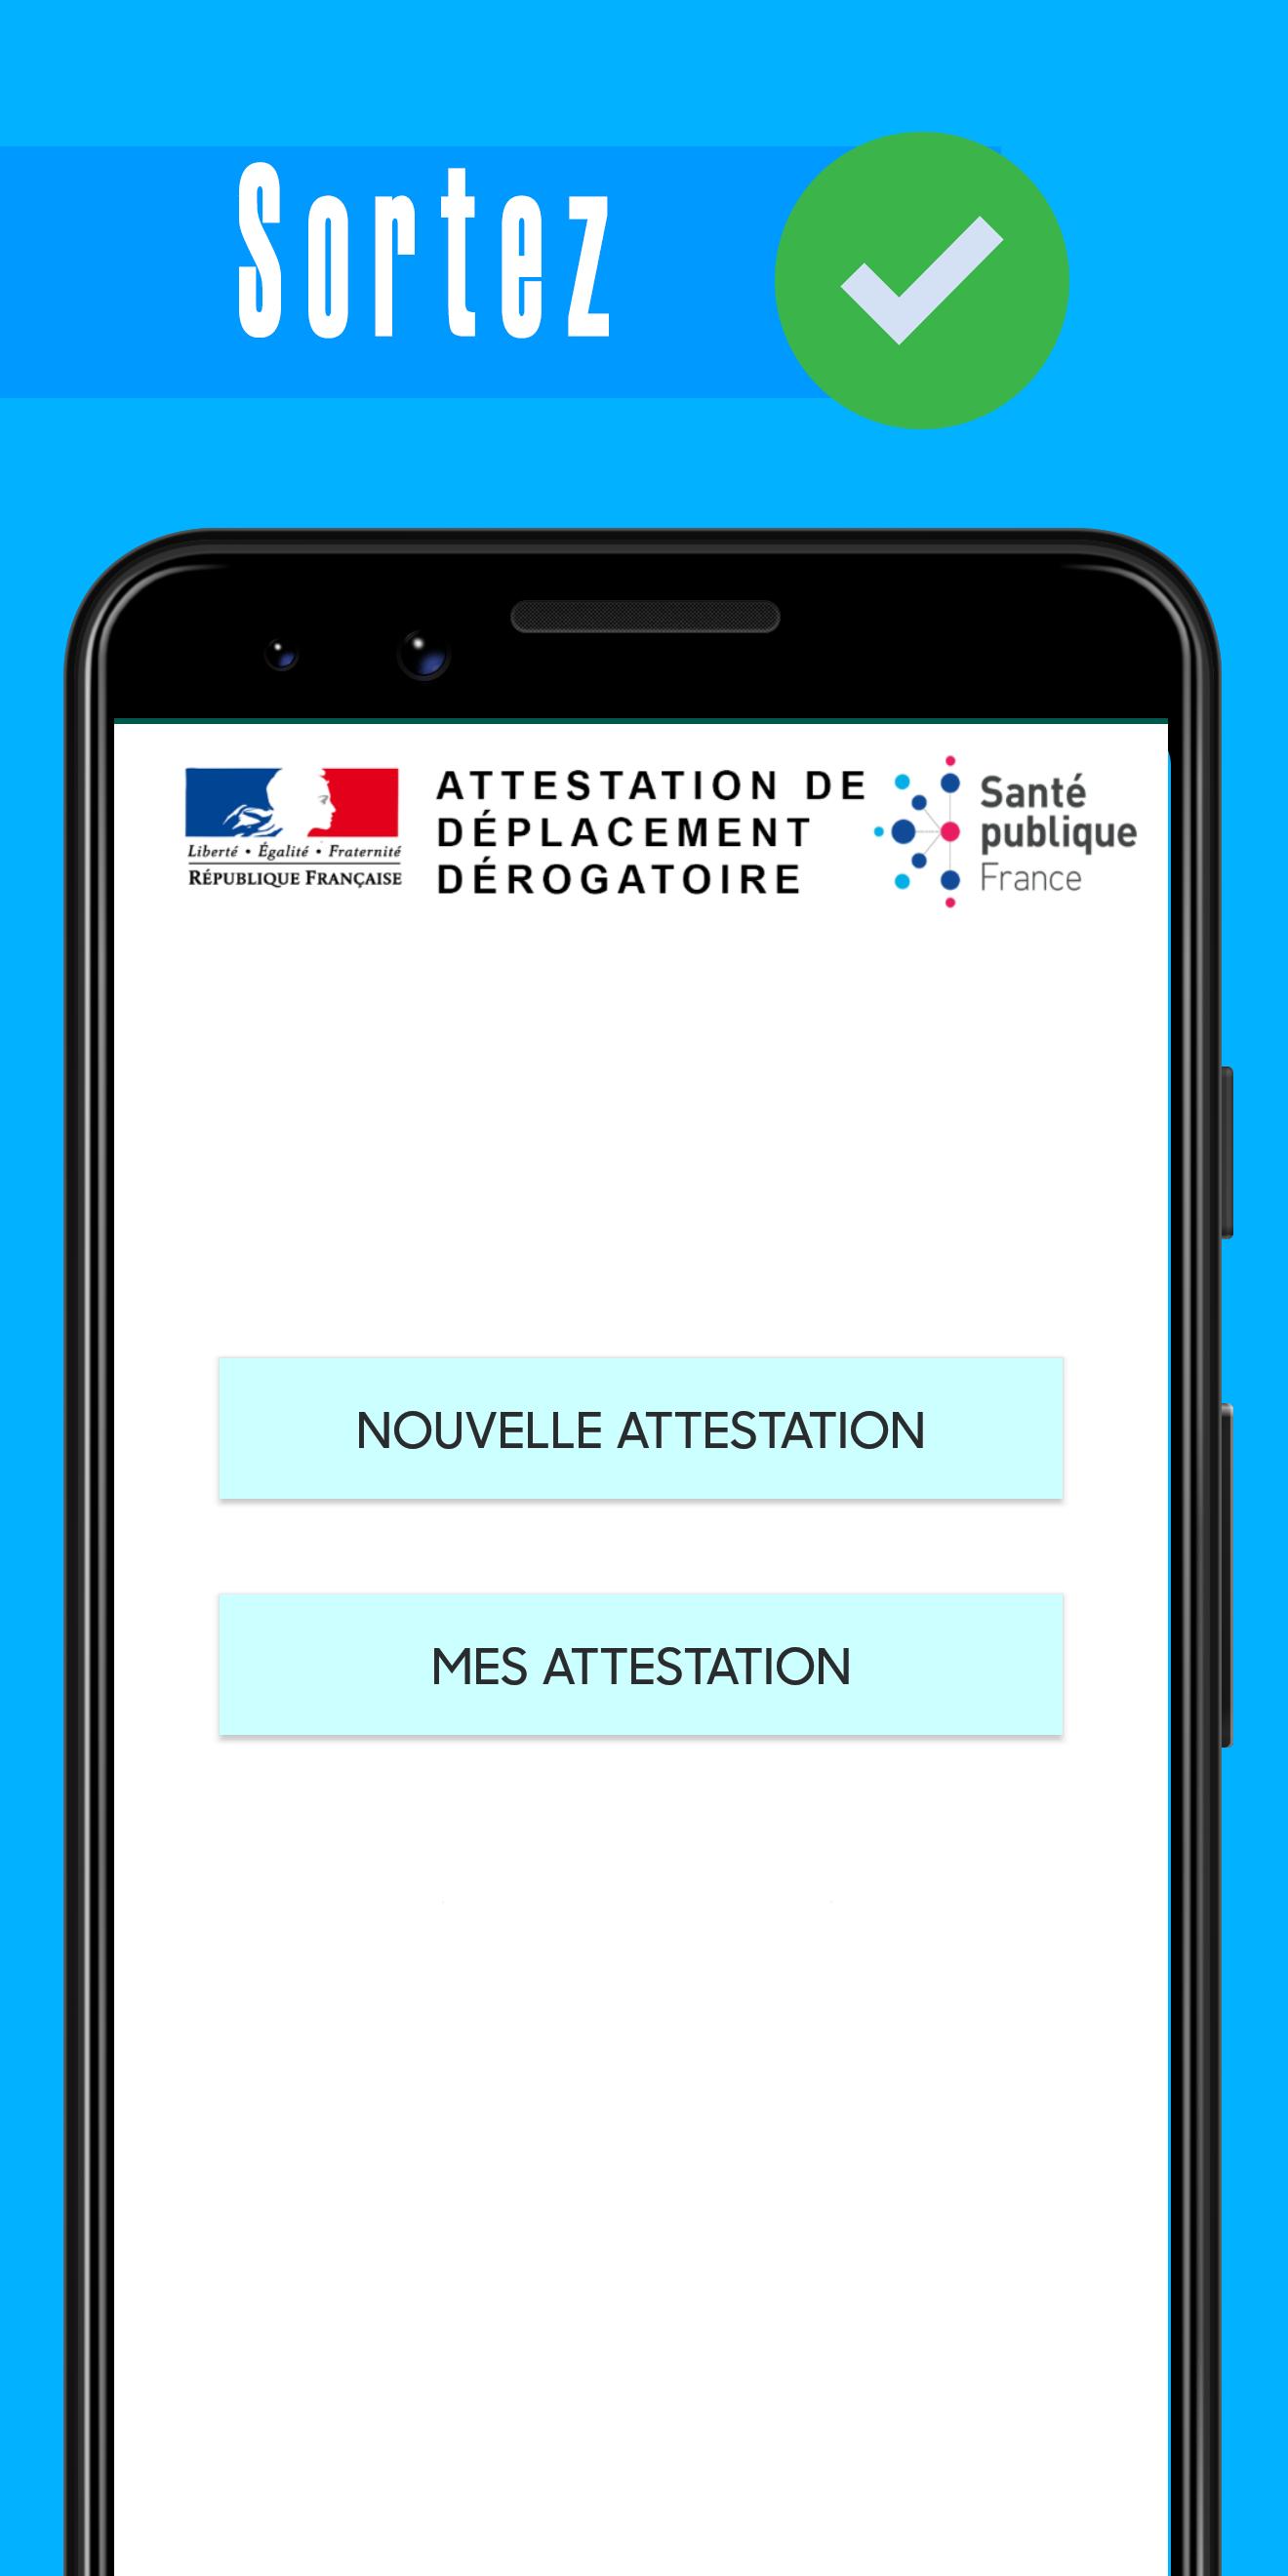 ATTESTATION DE DÉPLACEMENT DÉROGATOIRE 1.0 Screenshot 3